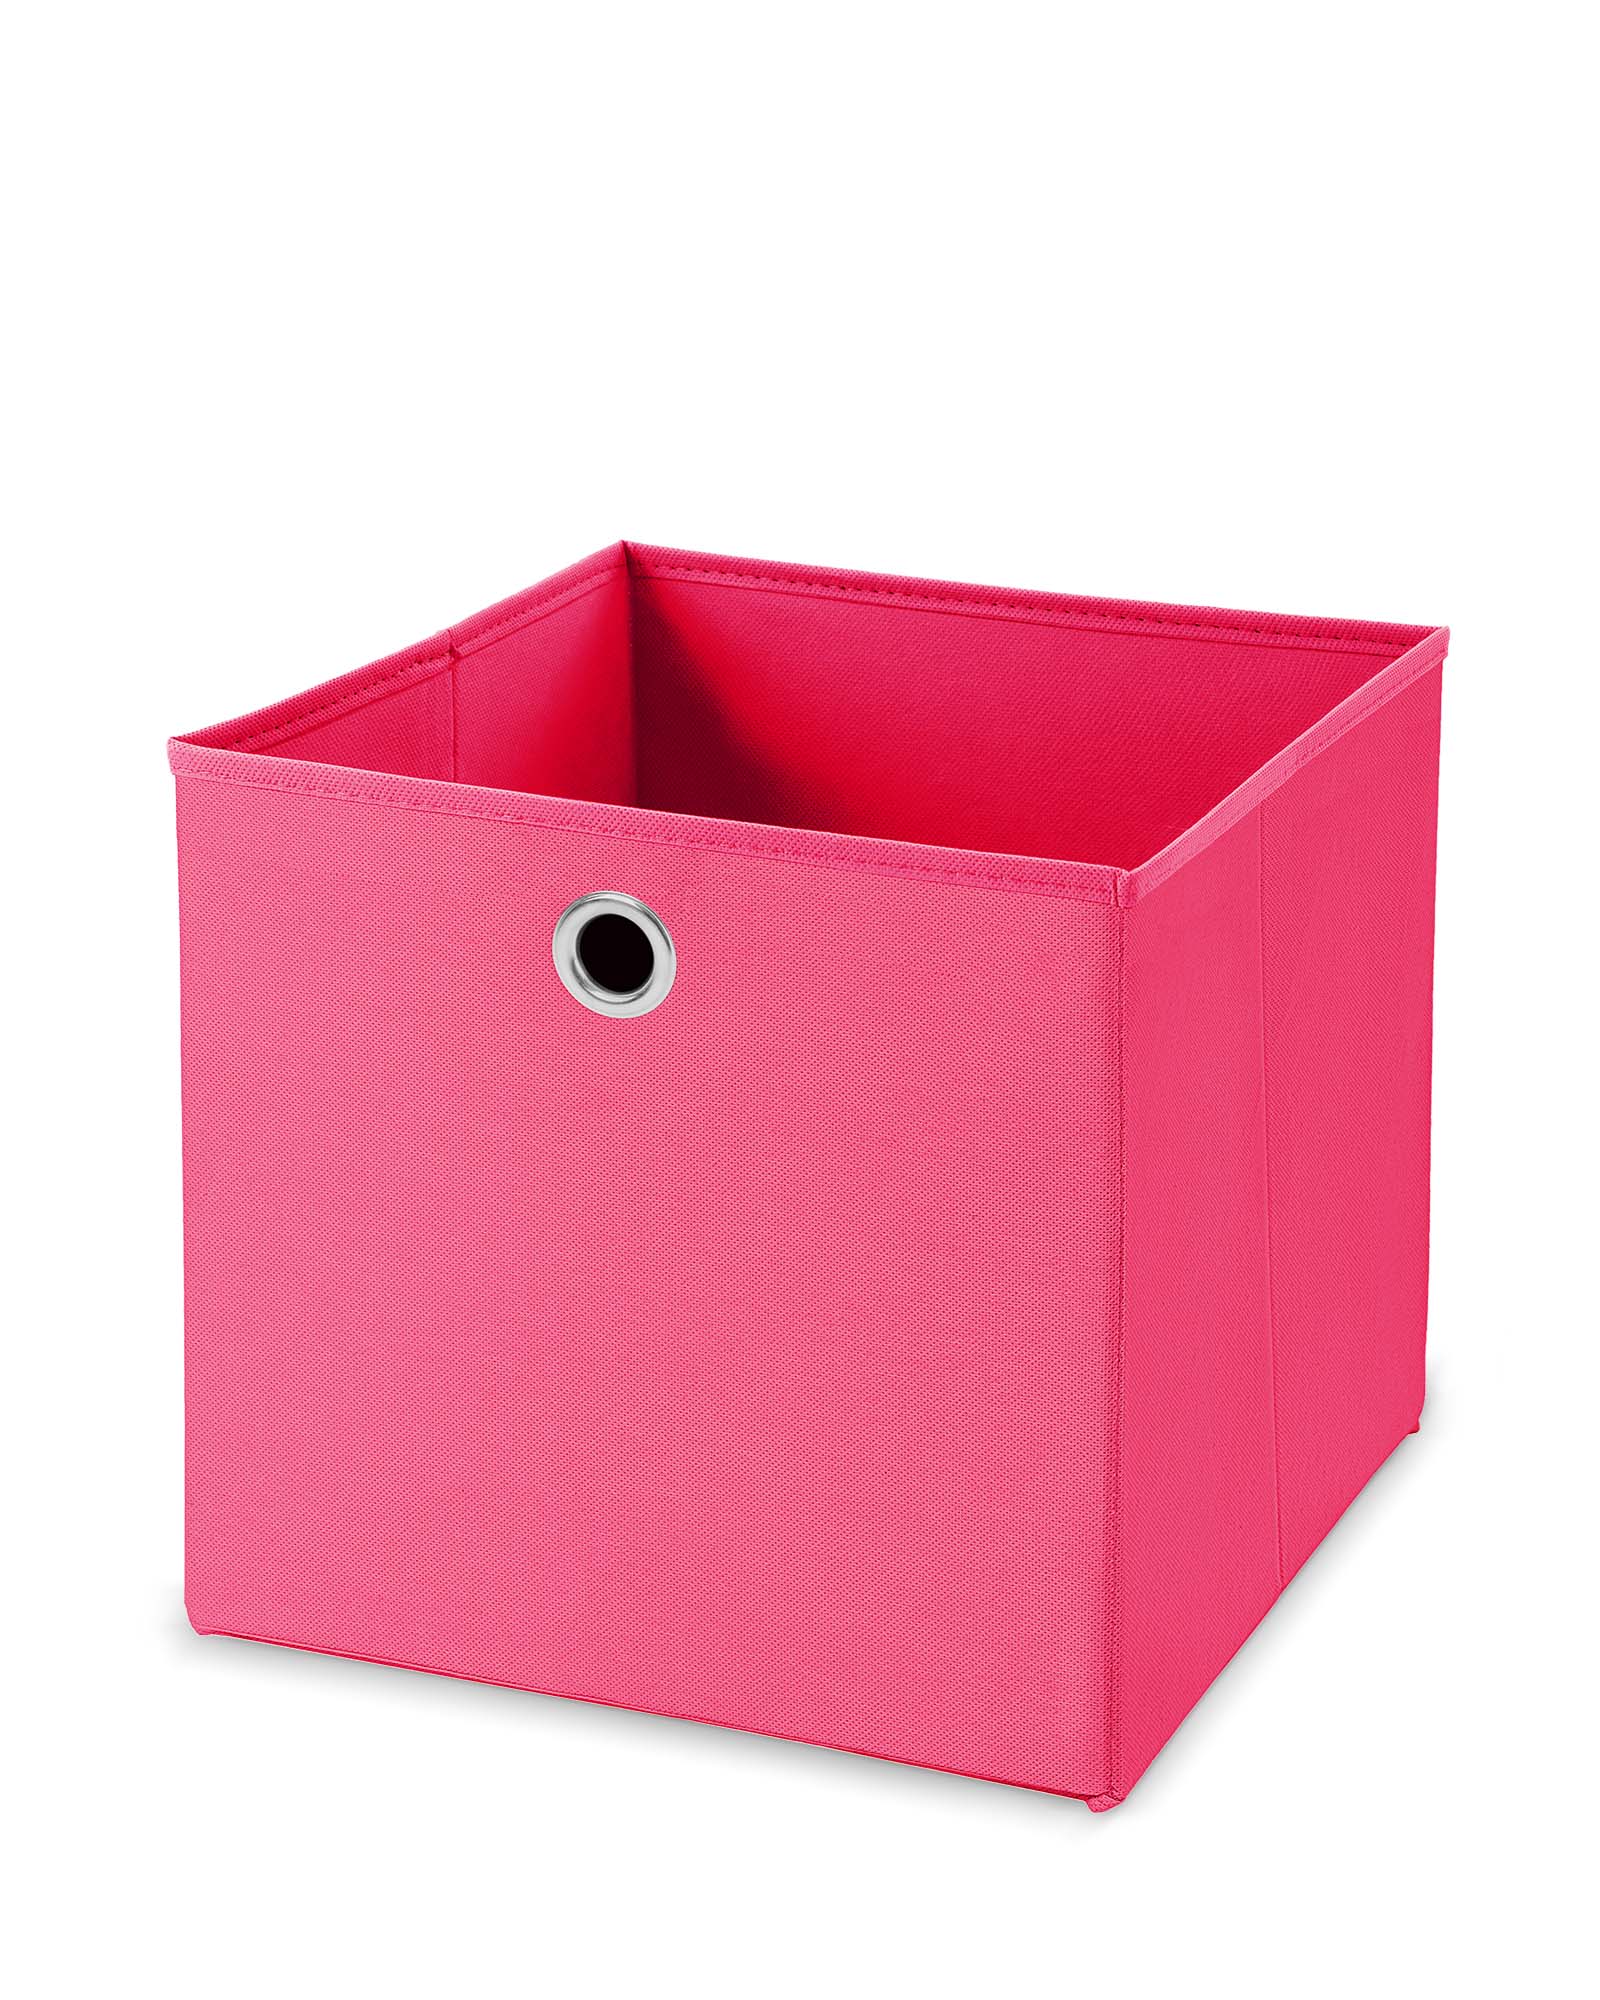 Faltbox 33x33x33 cm ohne Deckel in vielen Farben - mit Metallöse - Circul